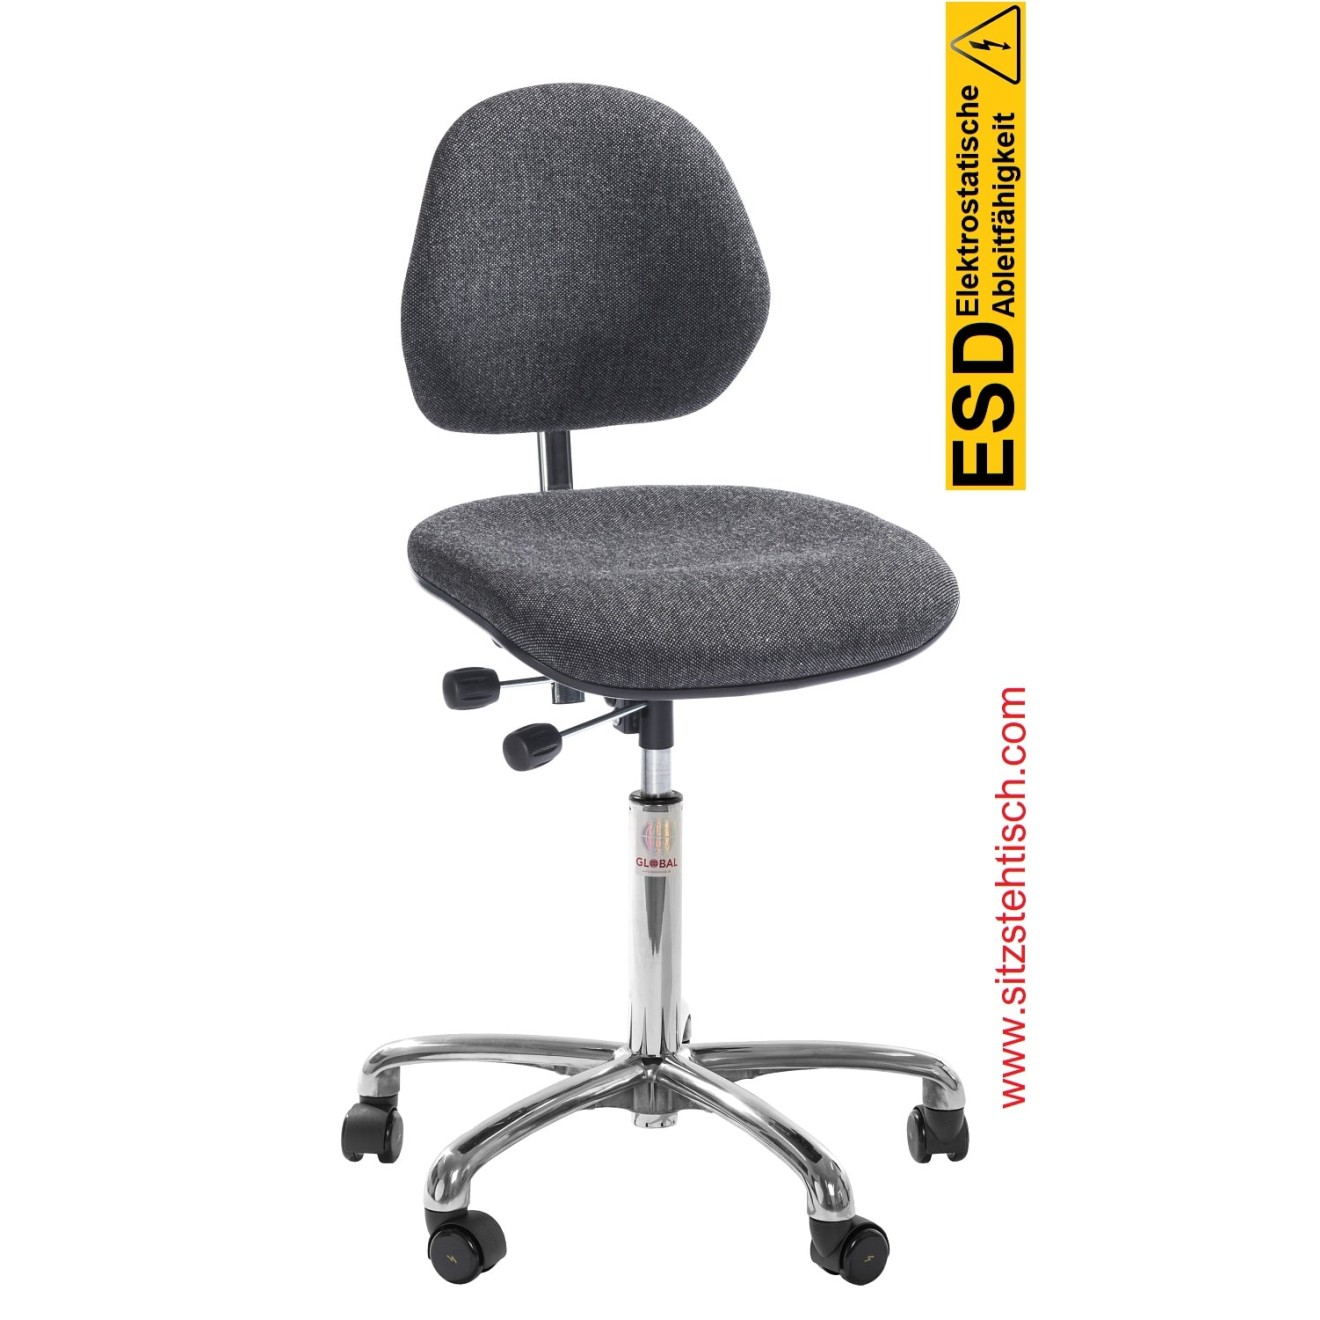 ESD-Drehstuhl "Aktiv ESD" - Sitz und Rückenlehne sind mit einem speziellen Stoff bezogen, Neigung Sitz und Rückenlehne stufenlos verstellbar, Fußkreuz aus Aluminium, elektrisch leitfähige Rollen Ø 50 mm - 5 Jahre Garantie